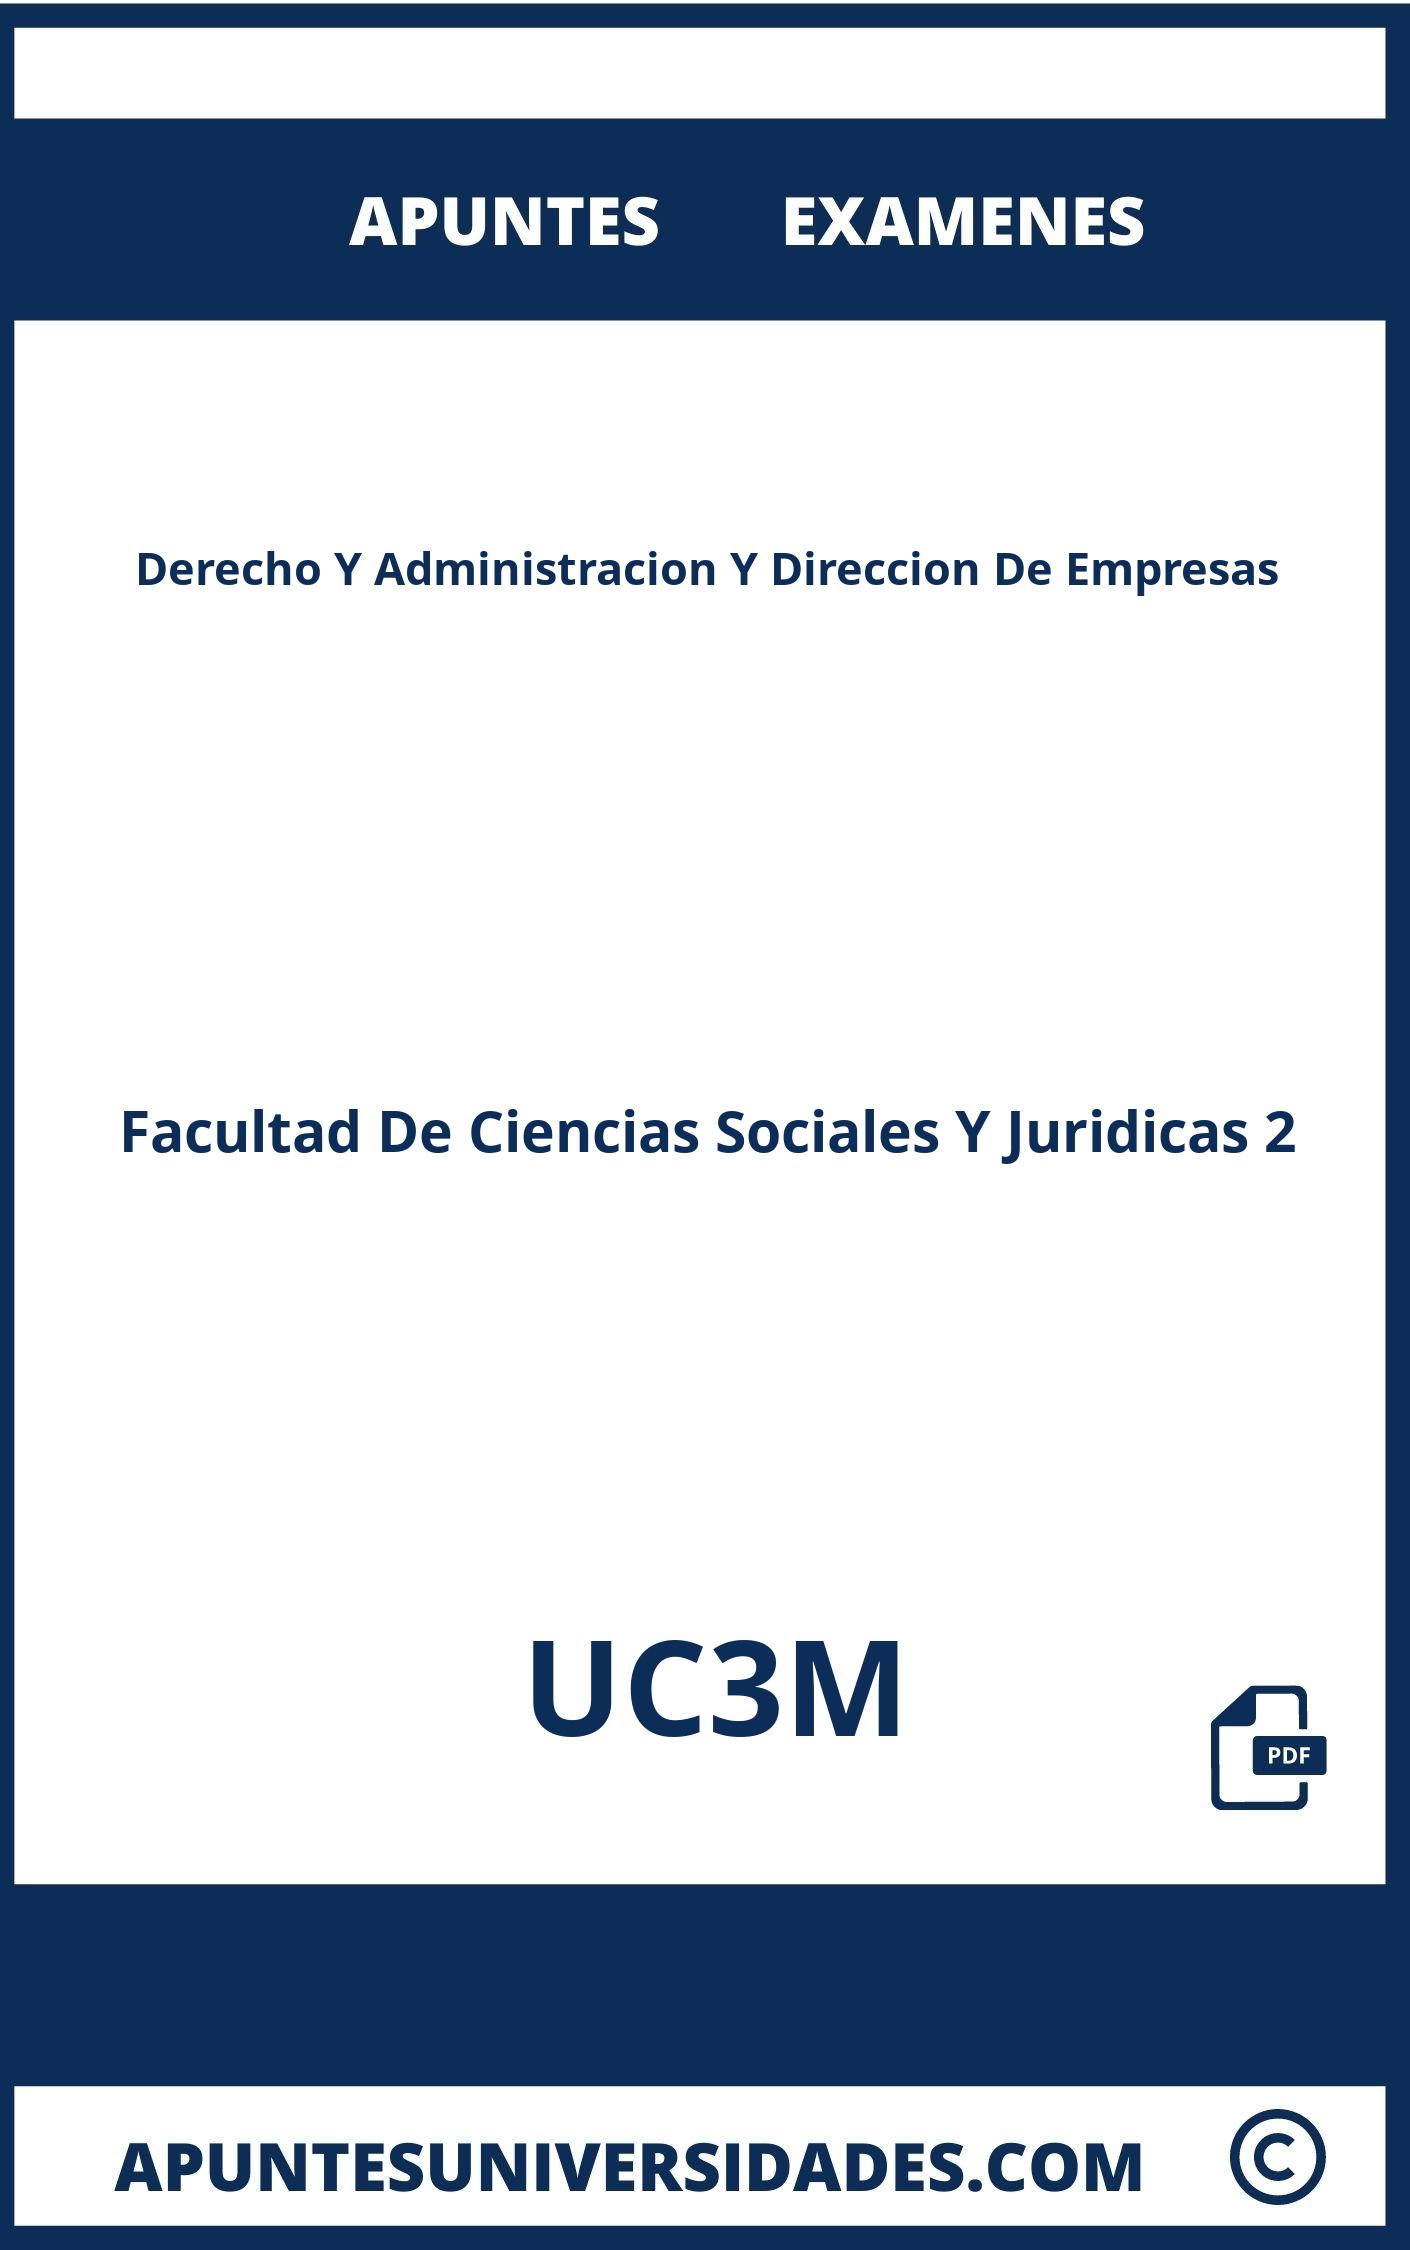 Derecho Y Administracion Y Direccion De Empresas UC3M Examenes Apuntes